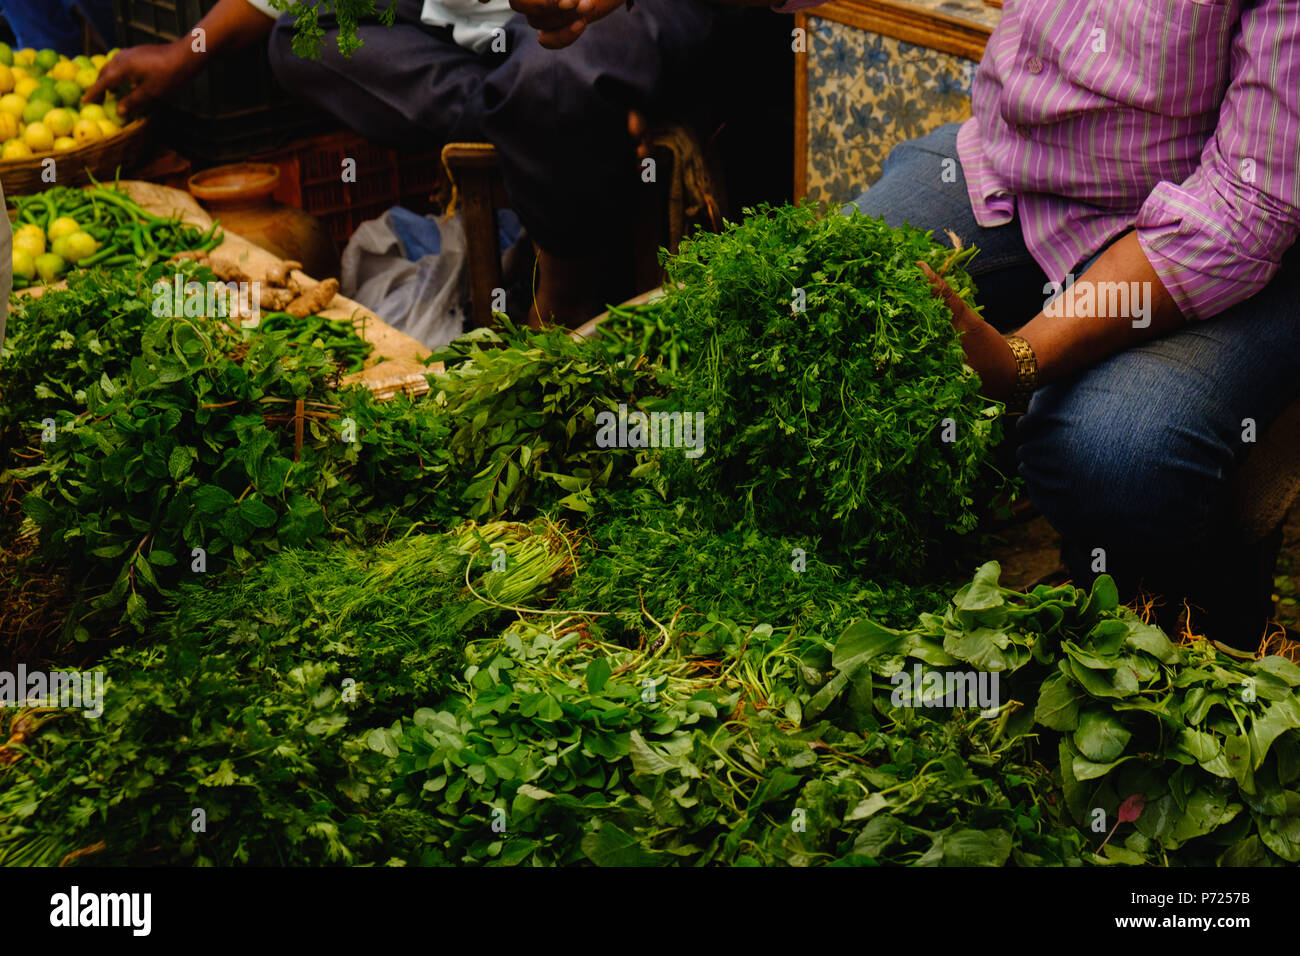 Homme vend des plantes indiennes, le poivre menthe, basilic, persil, aneth, épinards, salade Banque D'Images